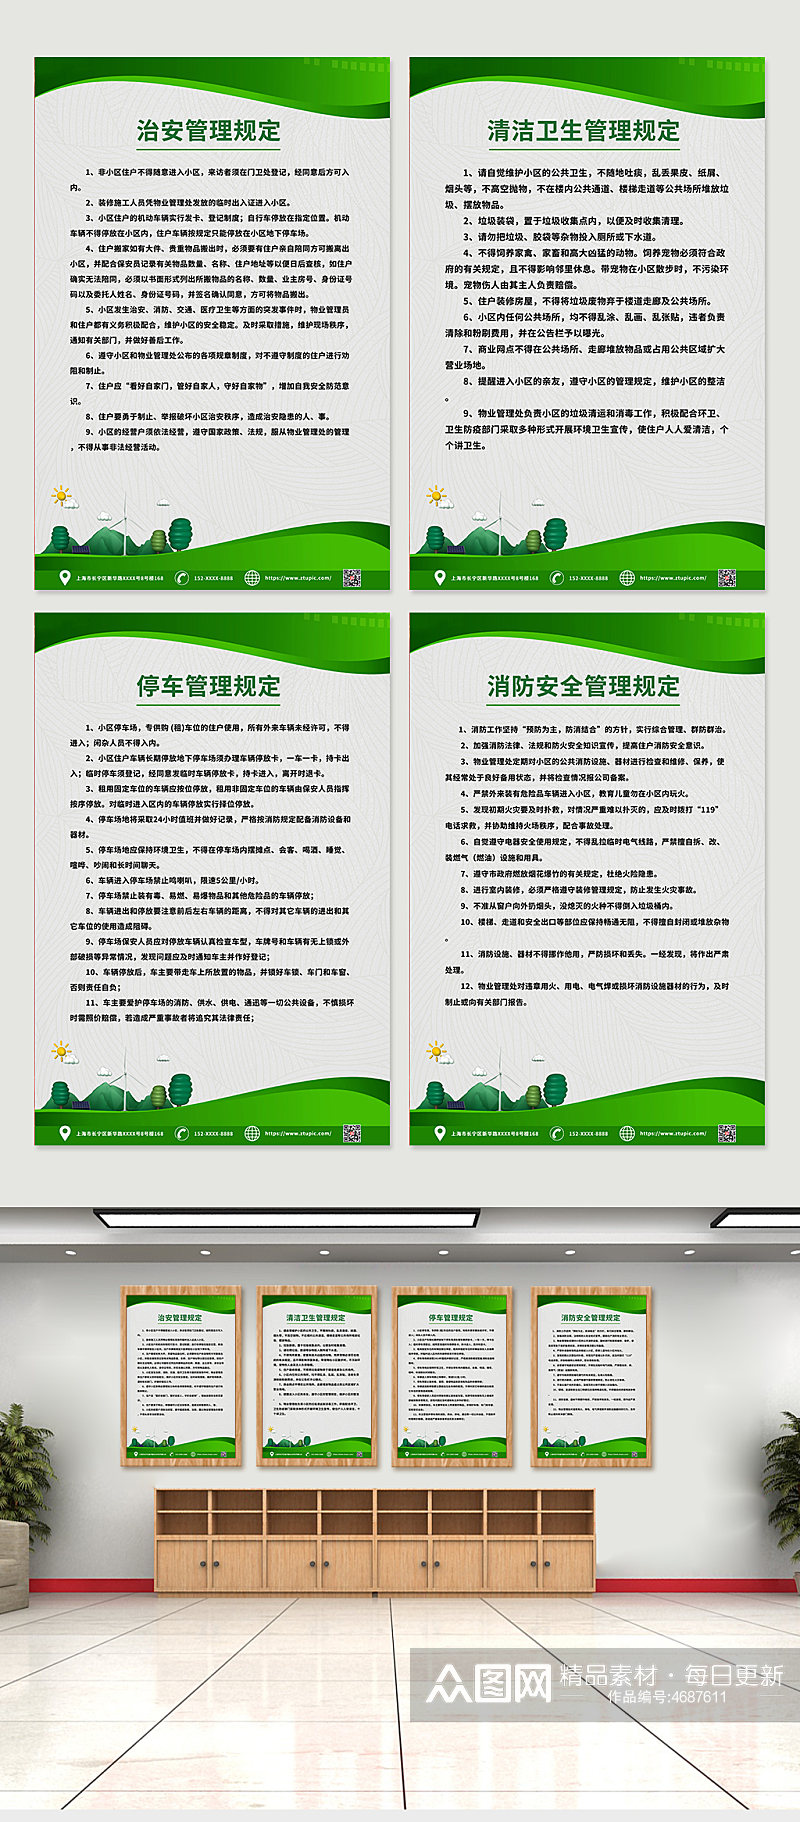 创意绿色物业管理条例制度牌系列海报素材